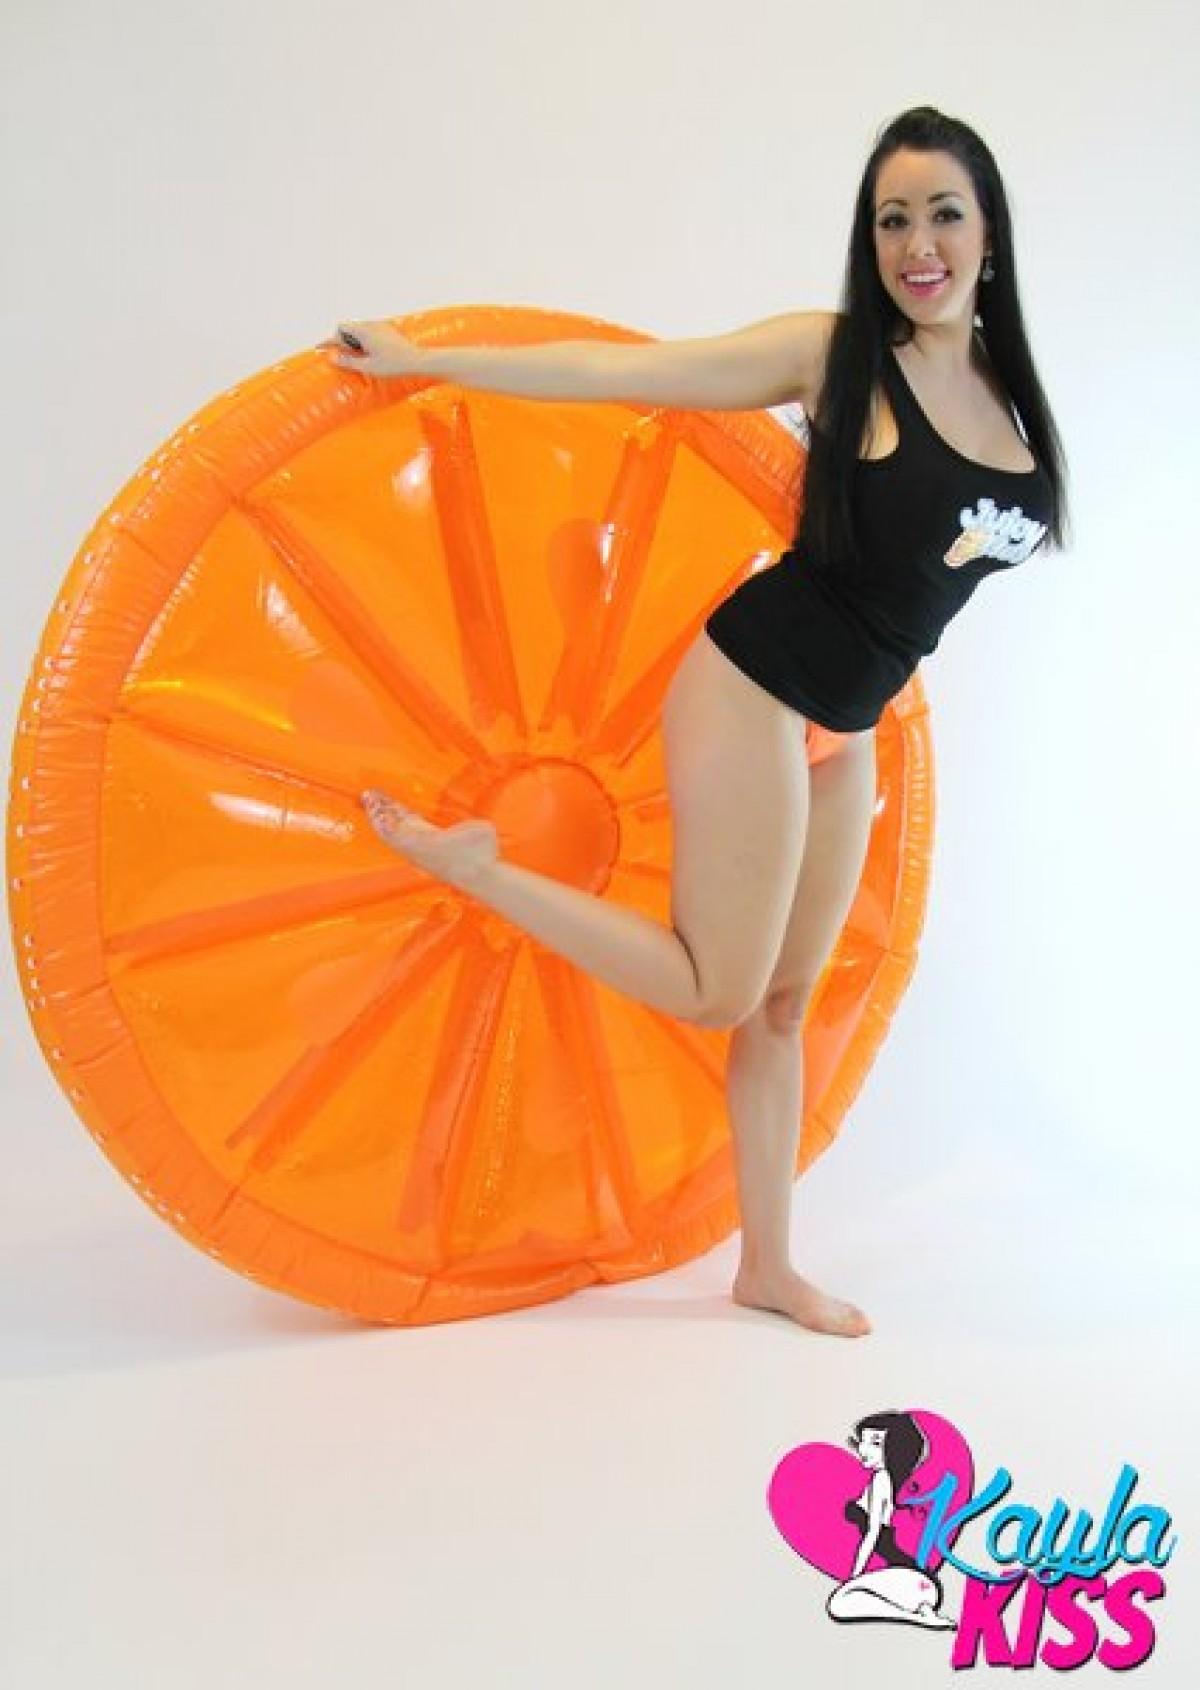 カイヤ・キスがオレンジ色の大きなインフレータブルの上で裸になります。
 #58180056